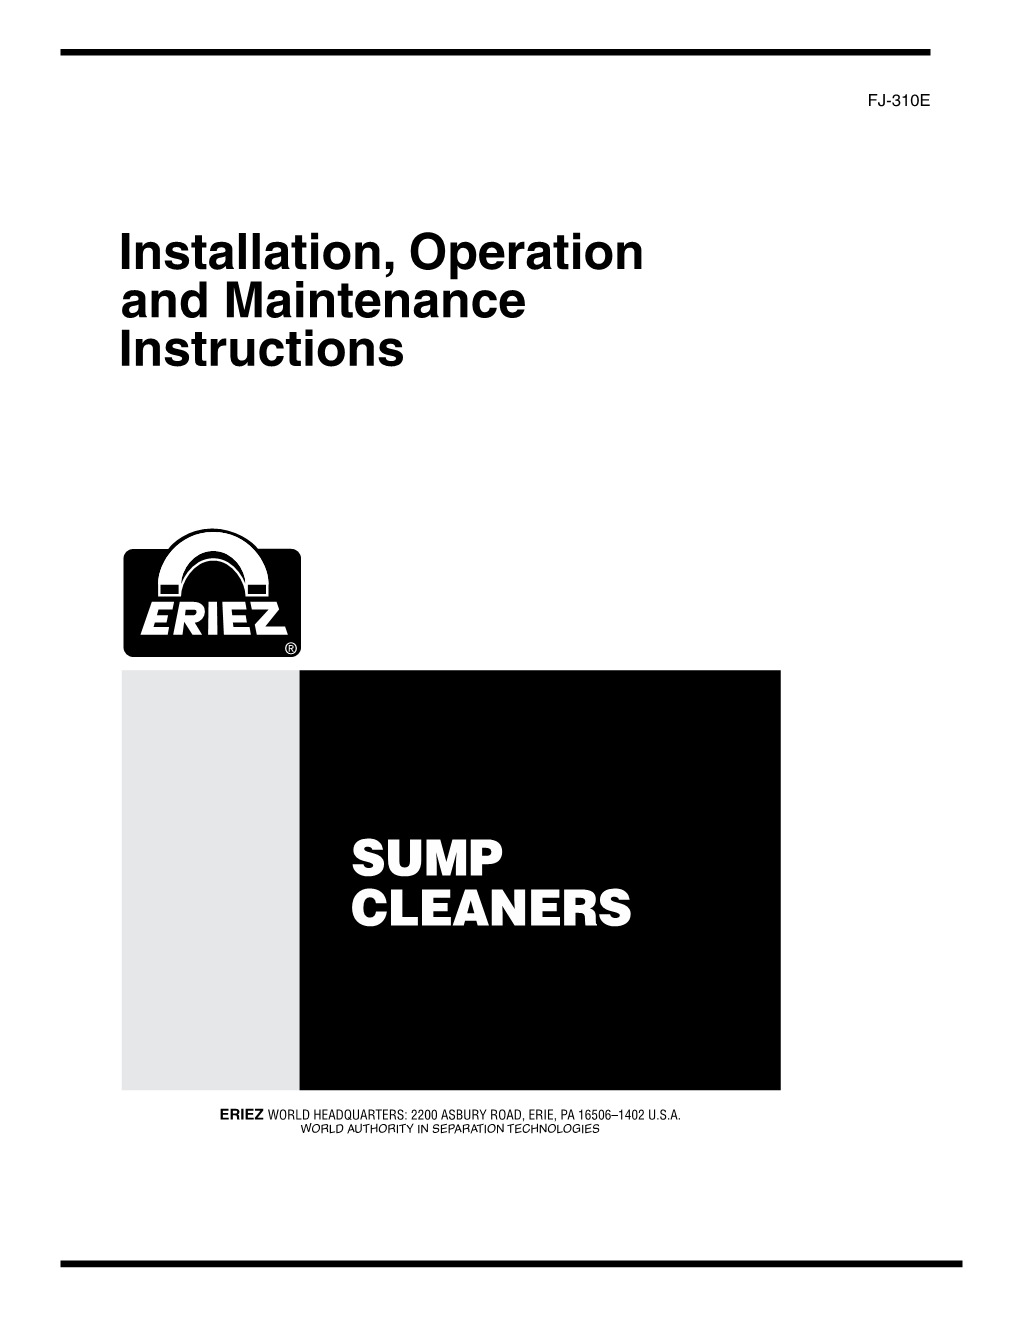 FJ-310 Sump Cleaner Manual